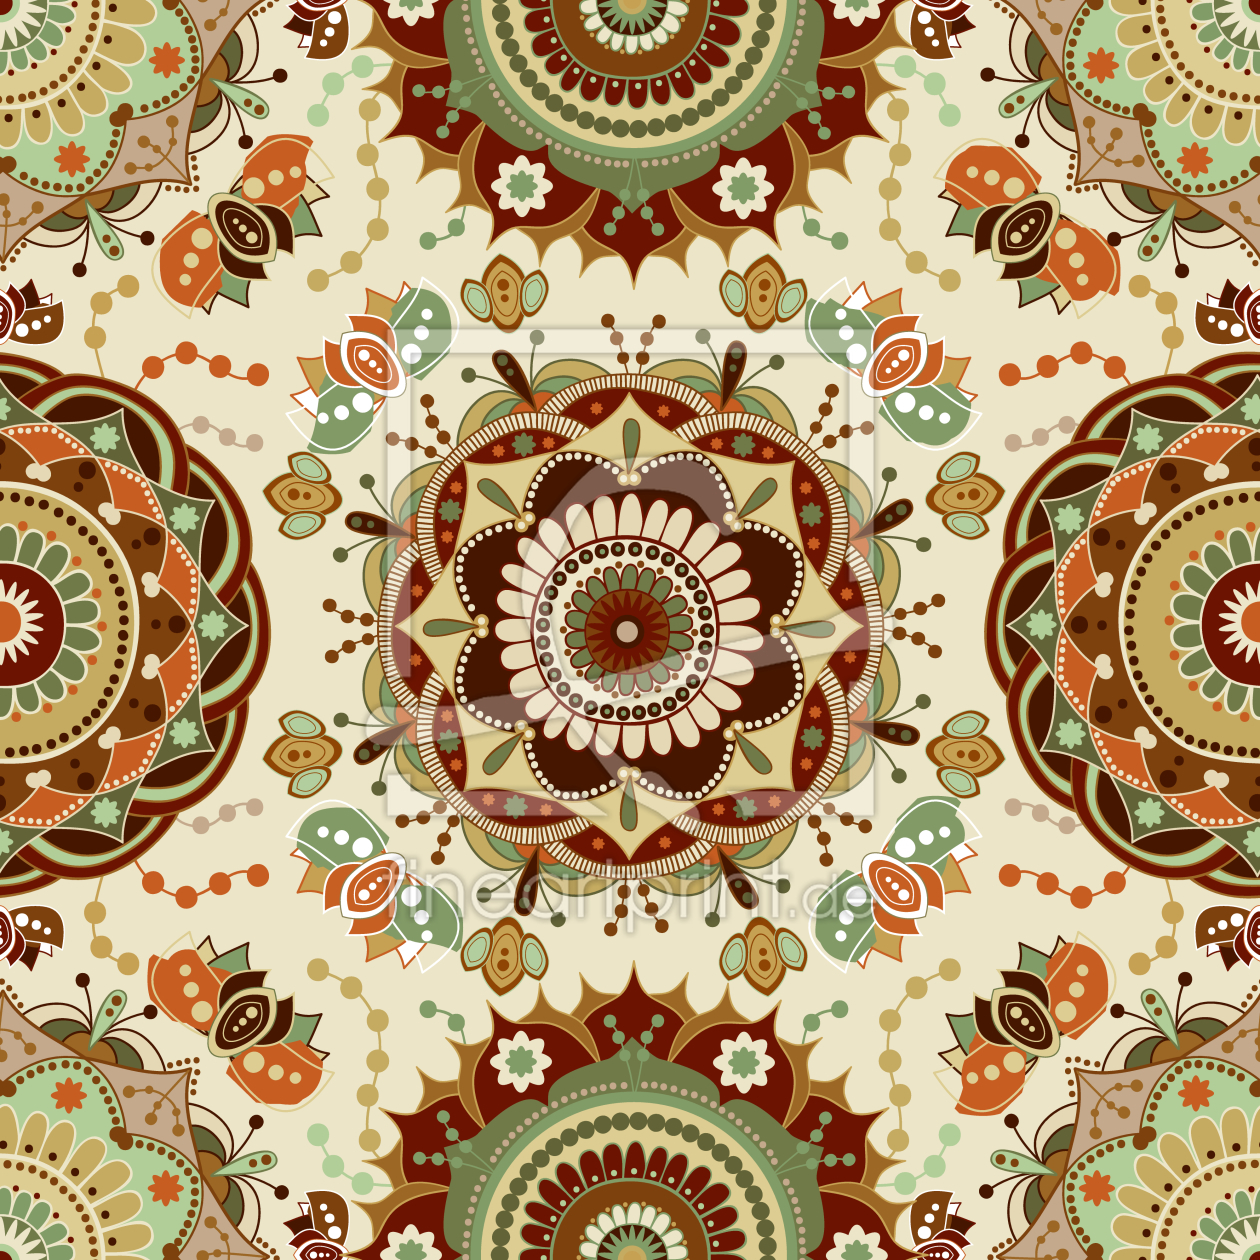 Bild-Nr.: 9011717 Reich verzierte Kreise erstellt von patterndesigns-com